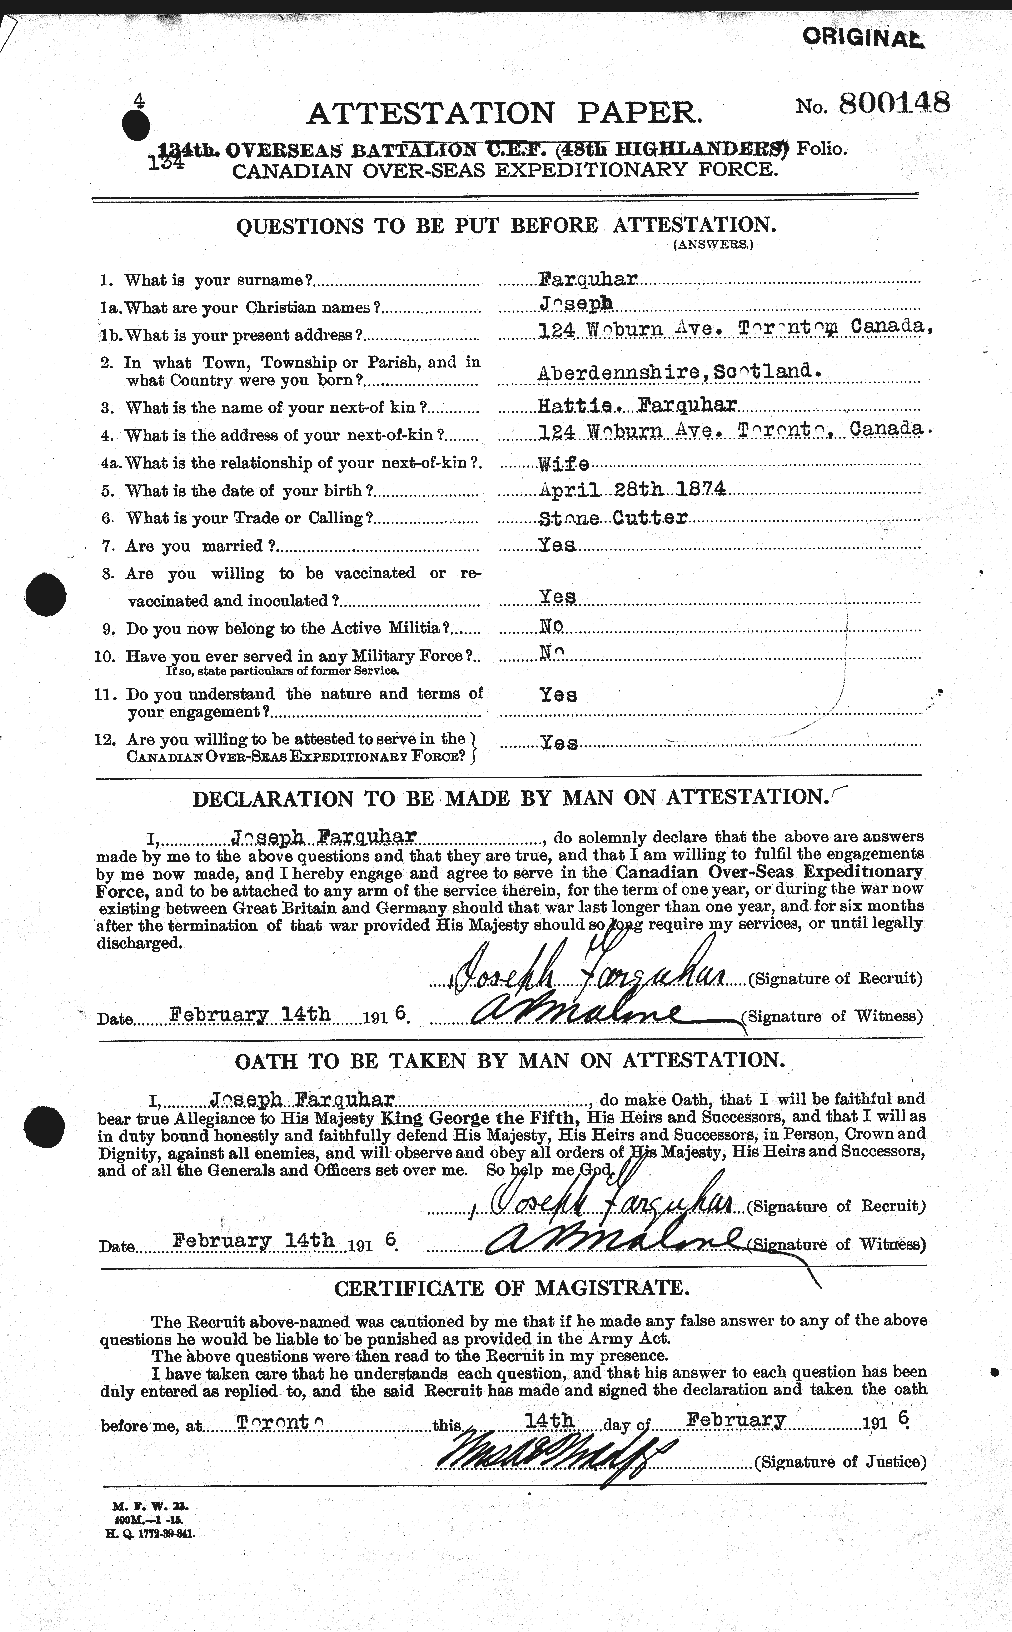 Dossiers du Personnel de la Première Guerre mondiale - CEC 318786a